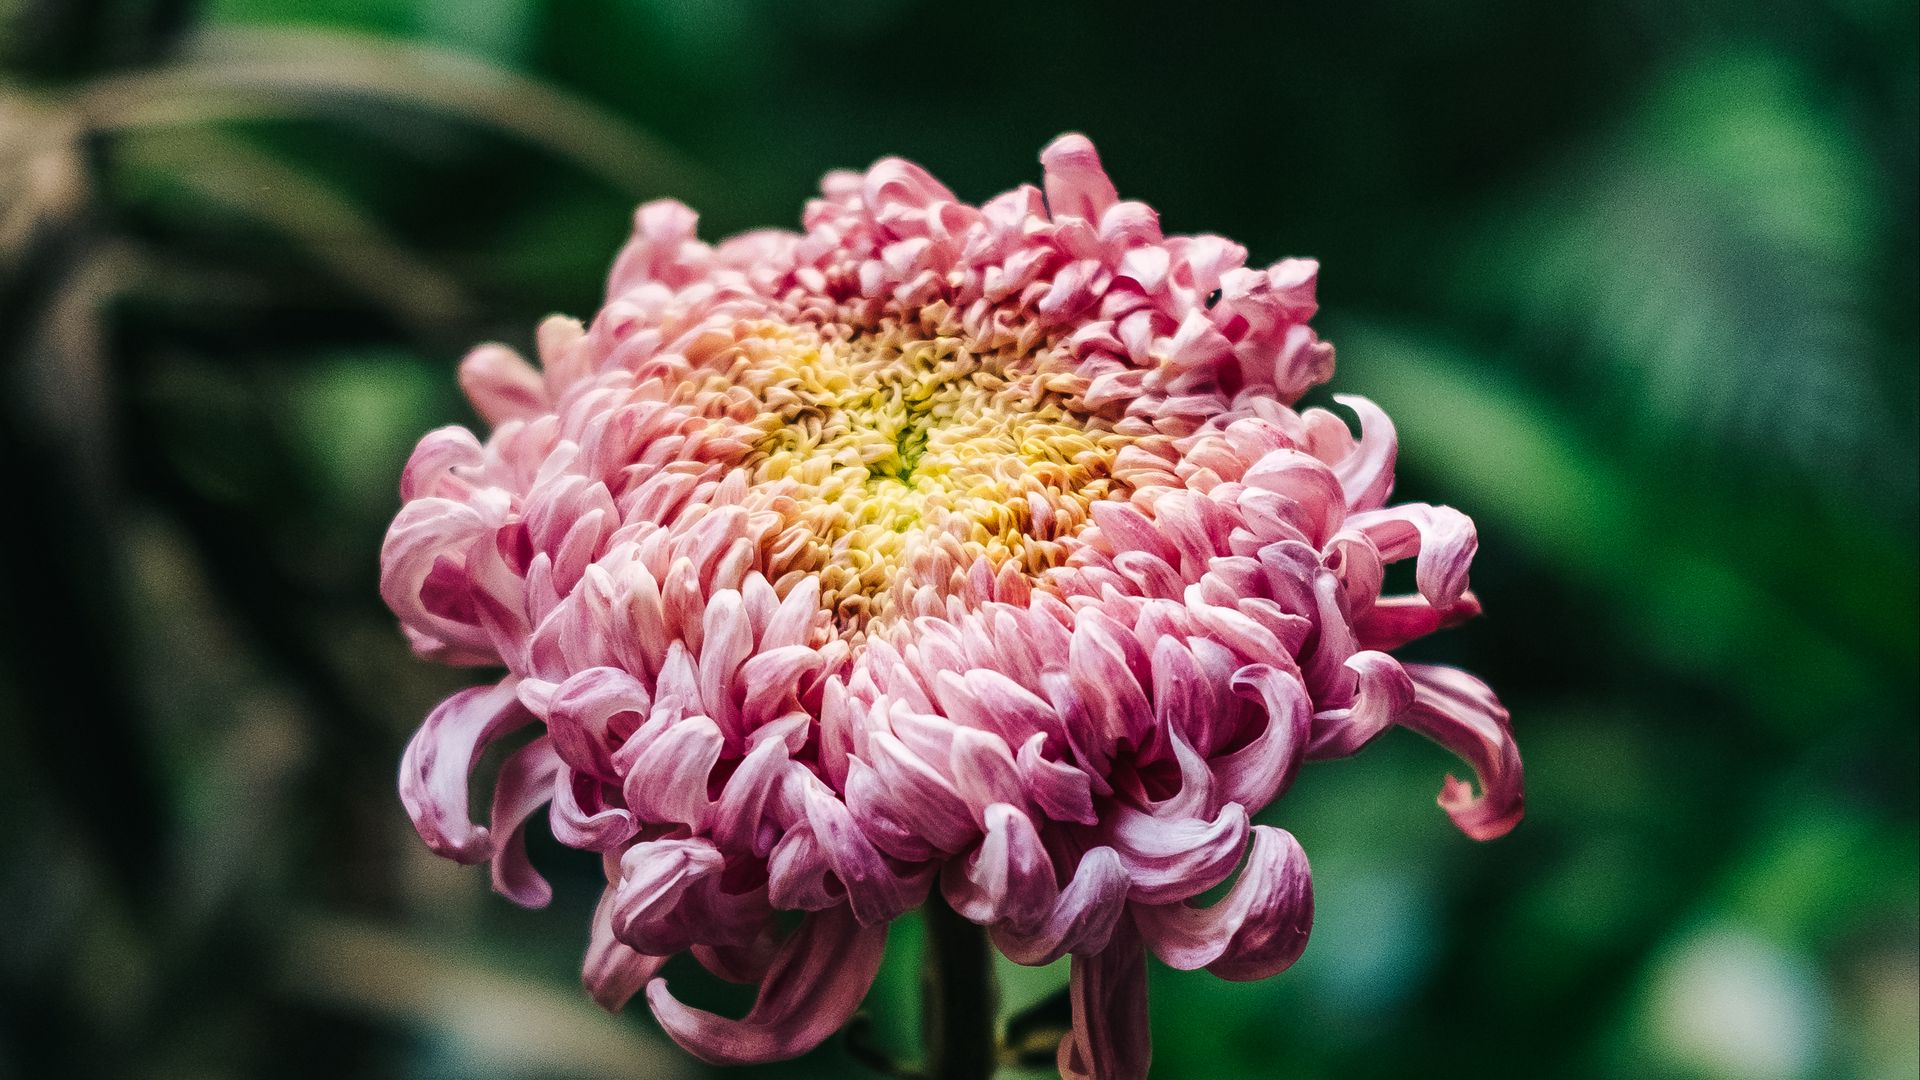 Хризантема английская розовая фото и описание